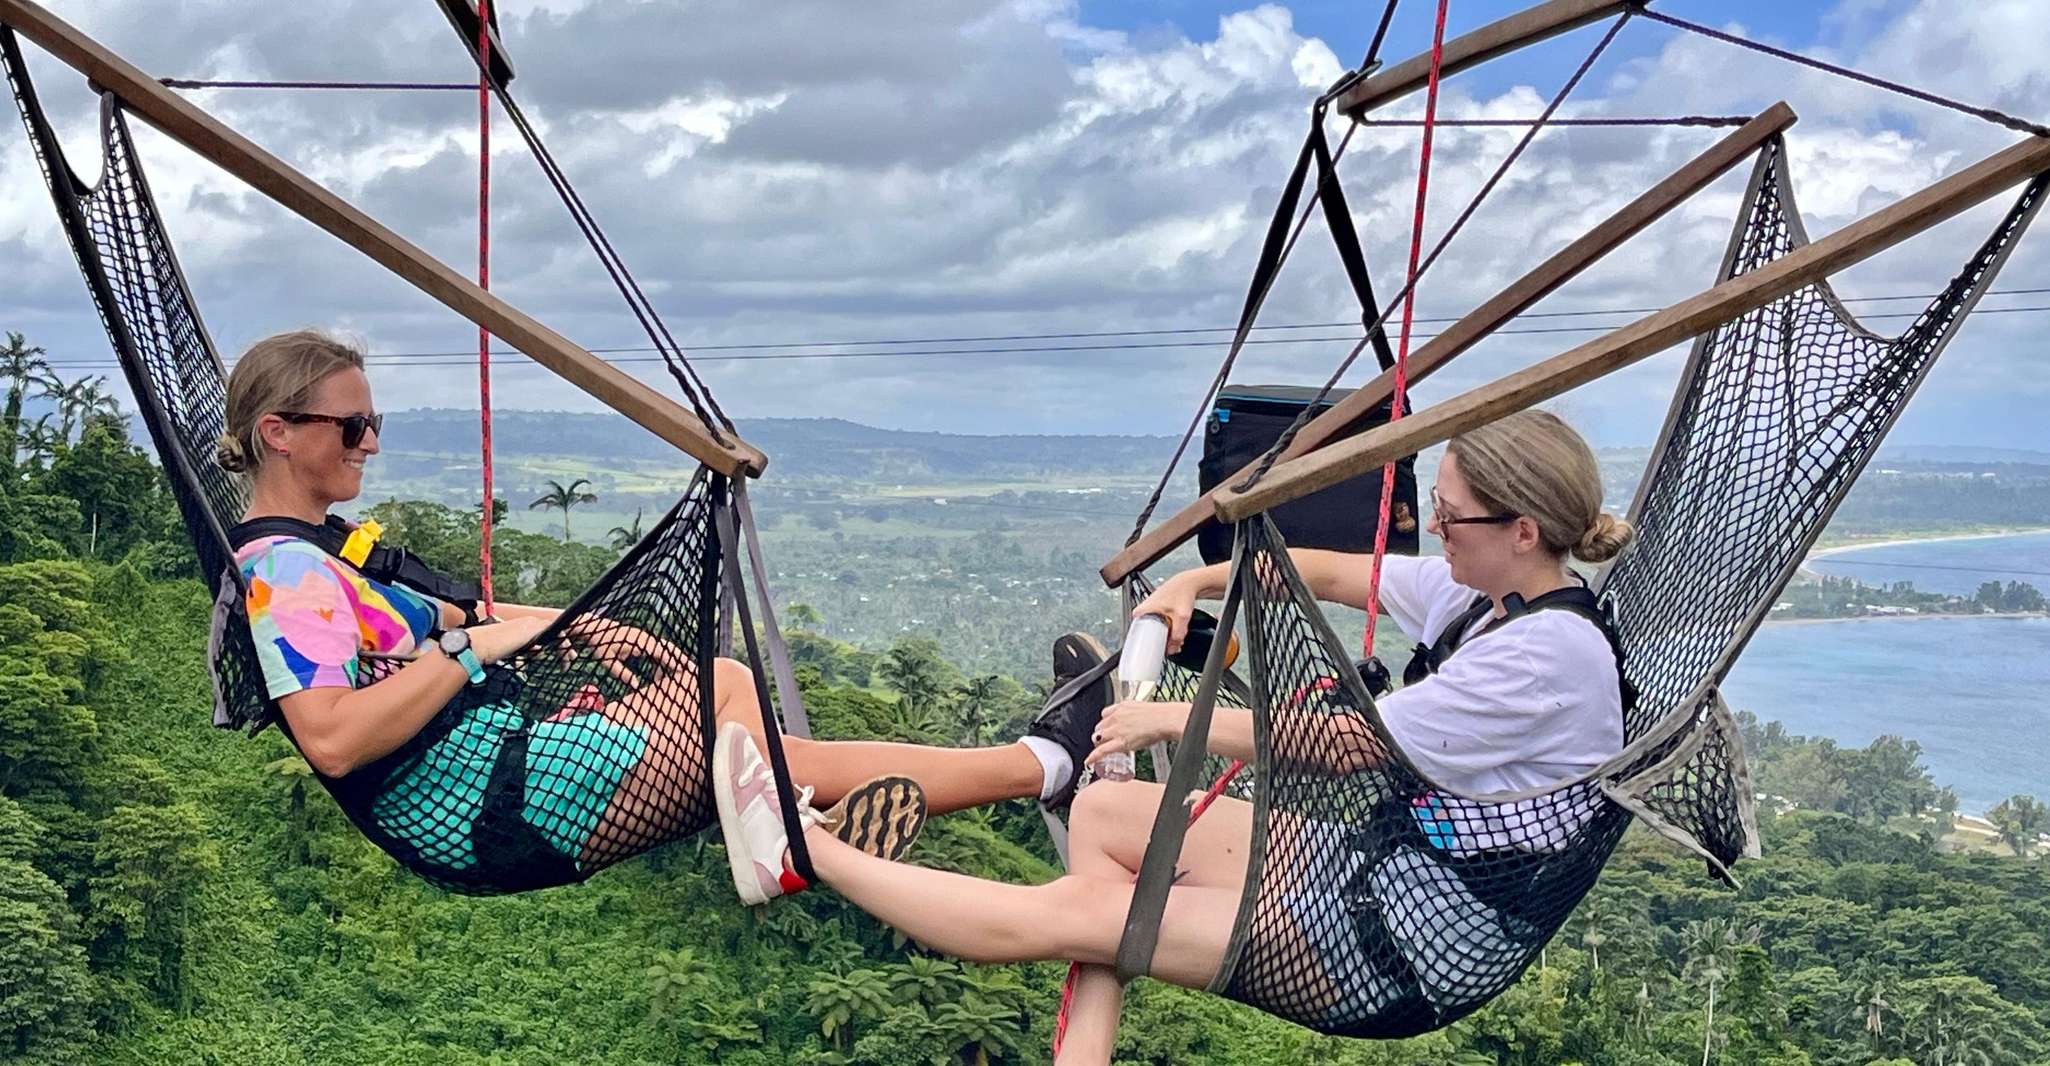 Vanuatu Jungle Chair in the Air